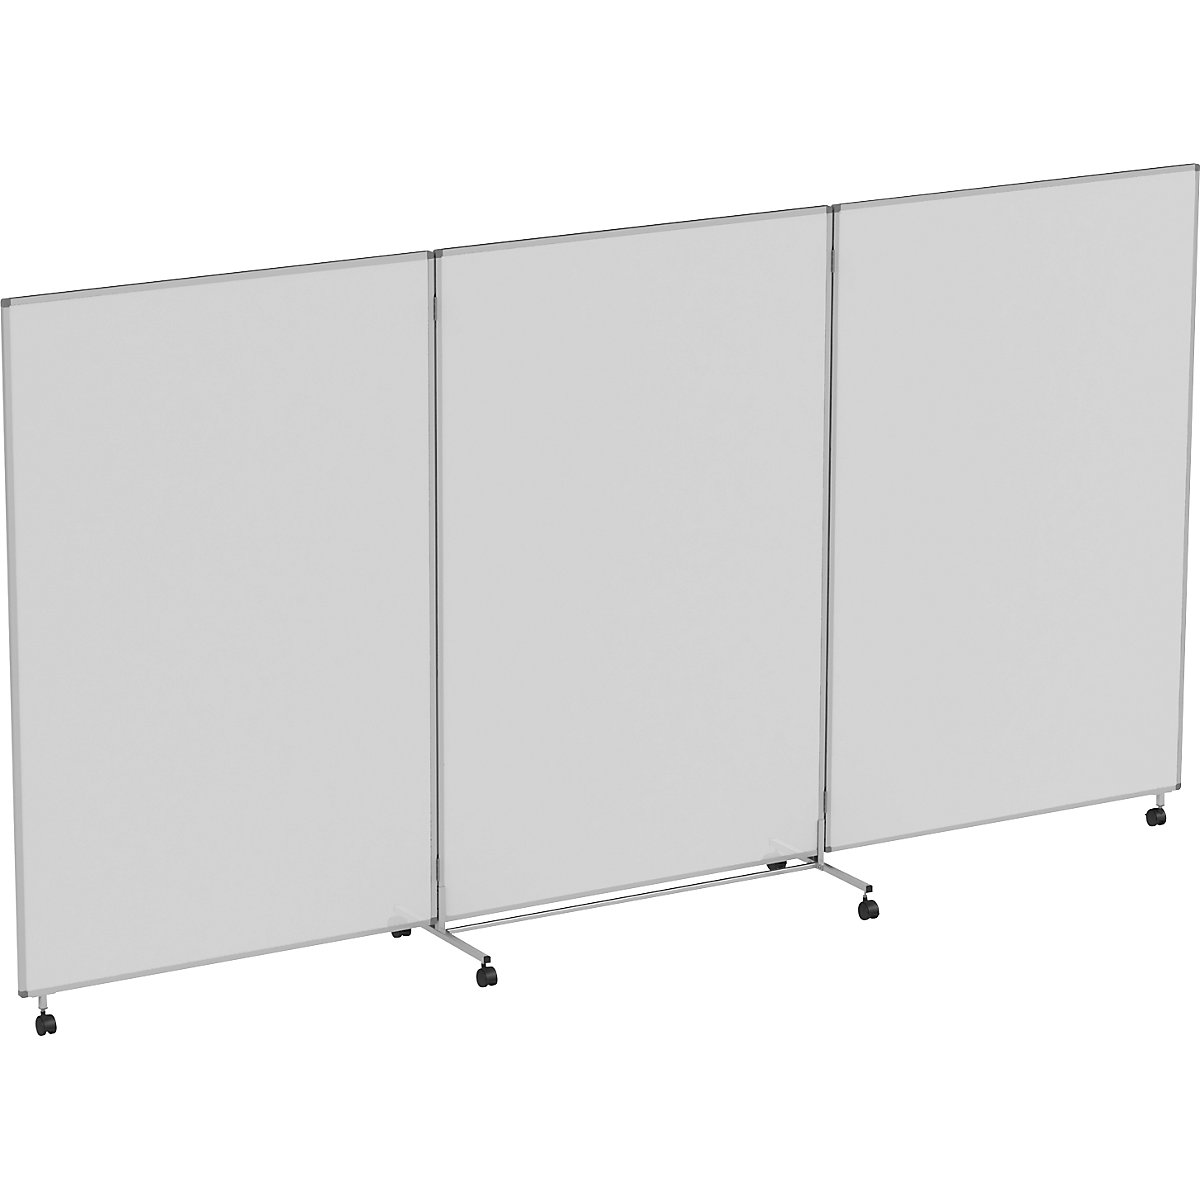 Ścianka do prezentacji/ścianka działowa, mobilna, składana, z możliwością pisania po powierzchni – eurokraft pro (Zdjęcie produktu 7)-6